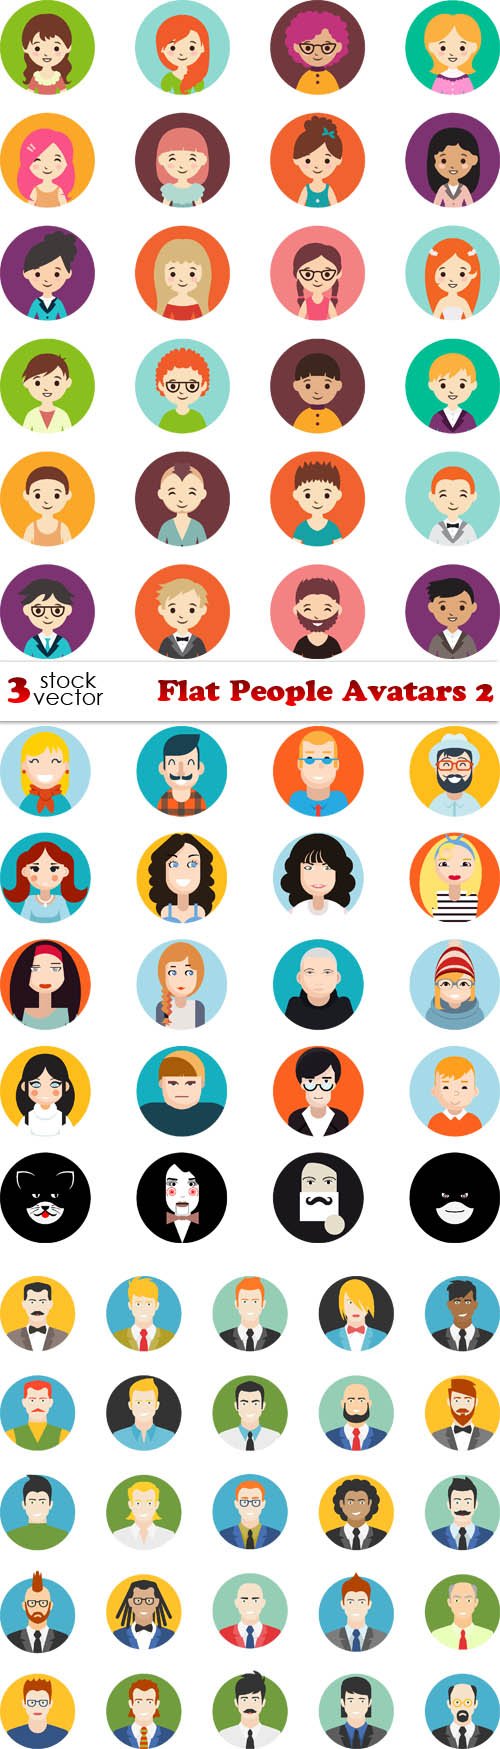 Vectors - Flat People Avatars 2